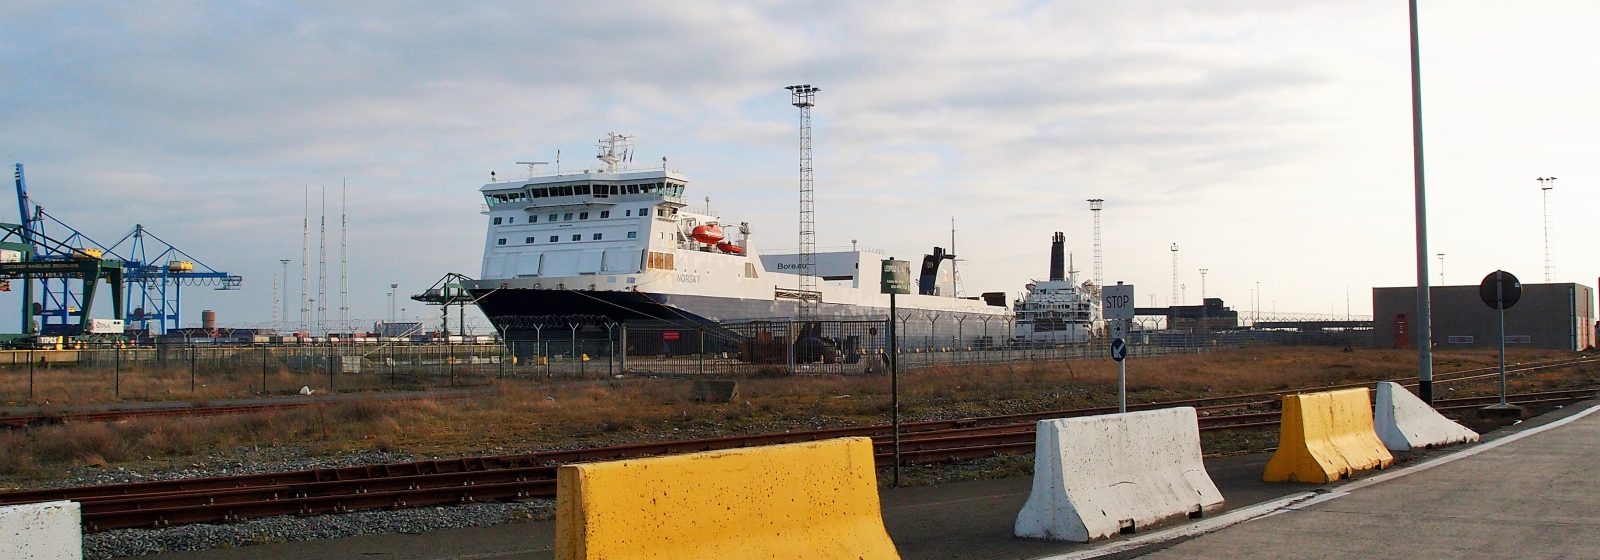 De 'Norsky' aan de kade in Zeebrugge